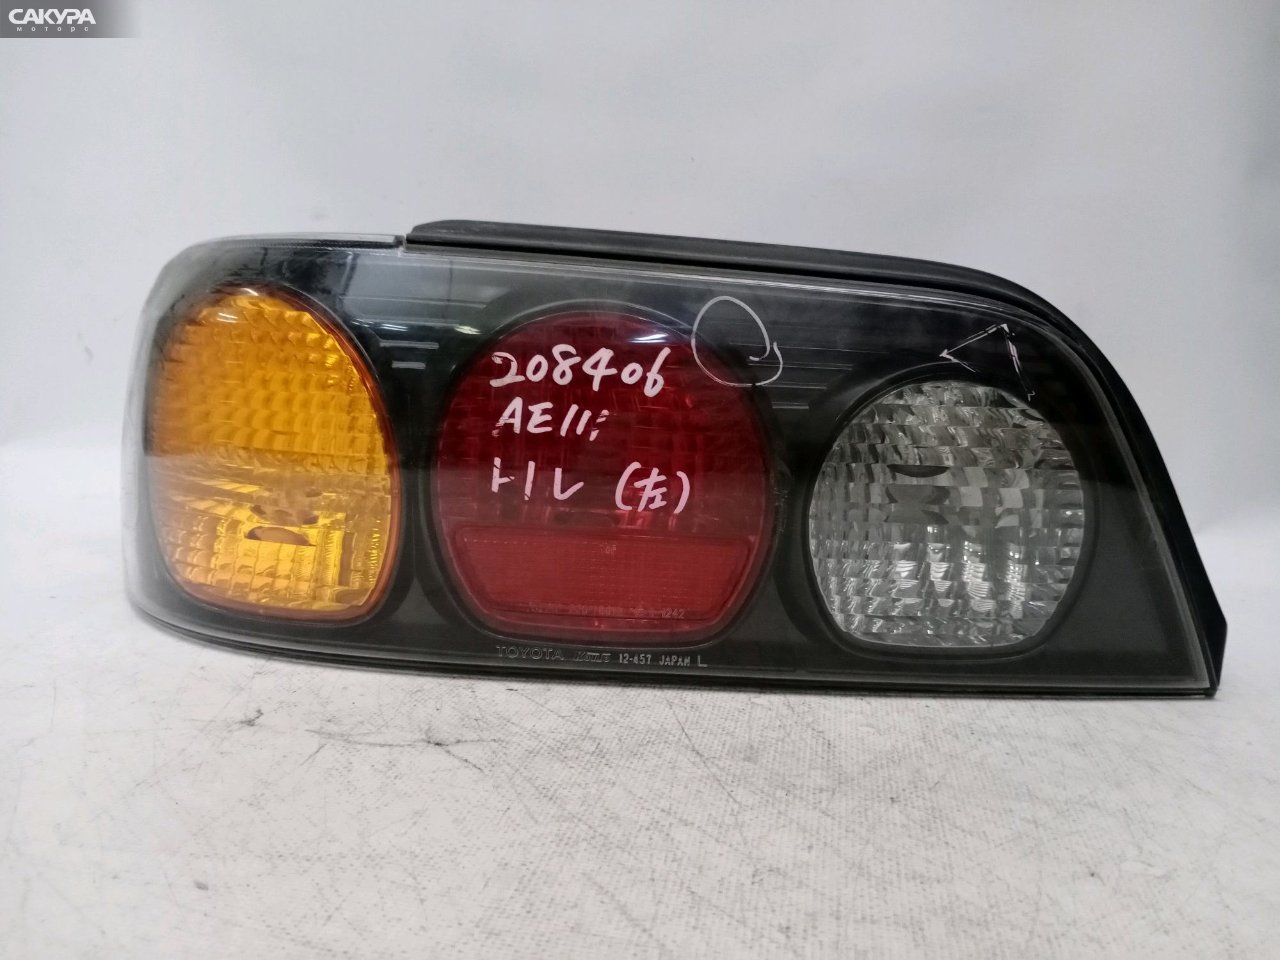 Фонарь стоп-сигнала левый Toyota Corolla Levin AE111 12-457: купить в Сакура Красноярск.